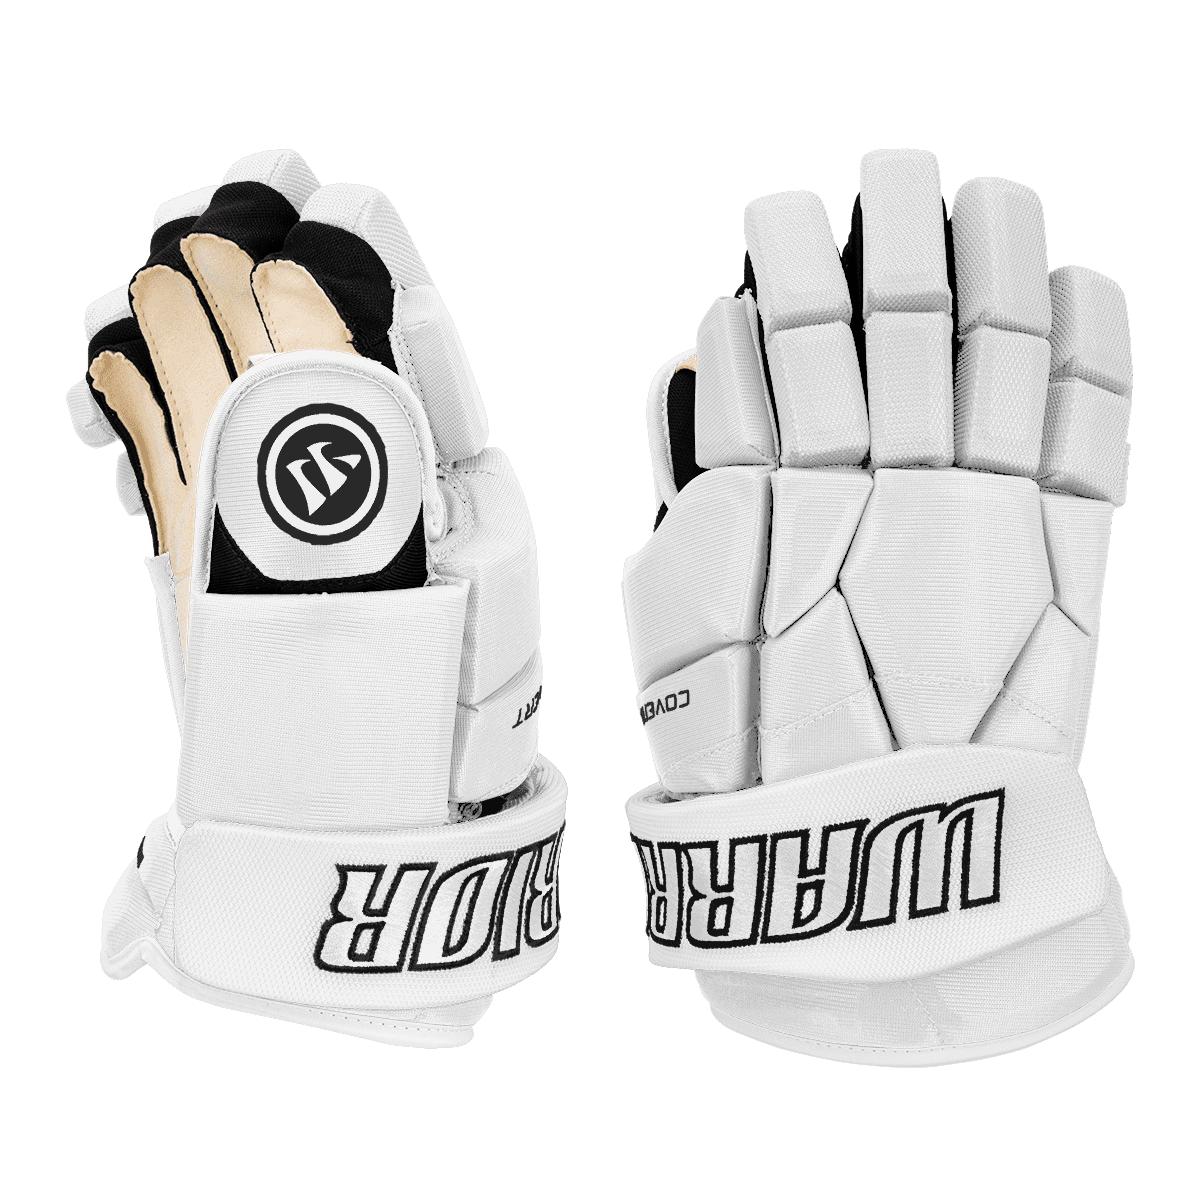 Warrior Covert Pro Hockey Gloves - Custom Design White - Default Inspiration